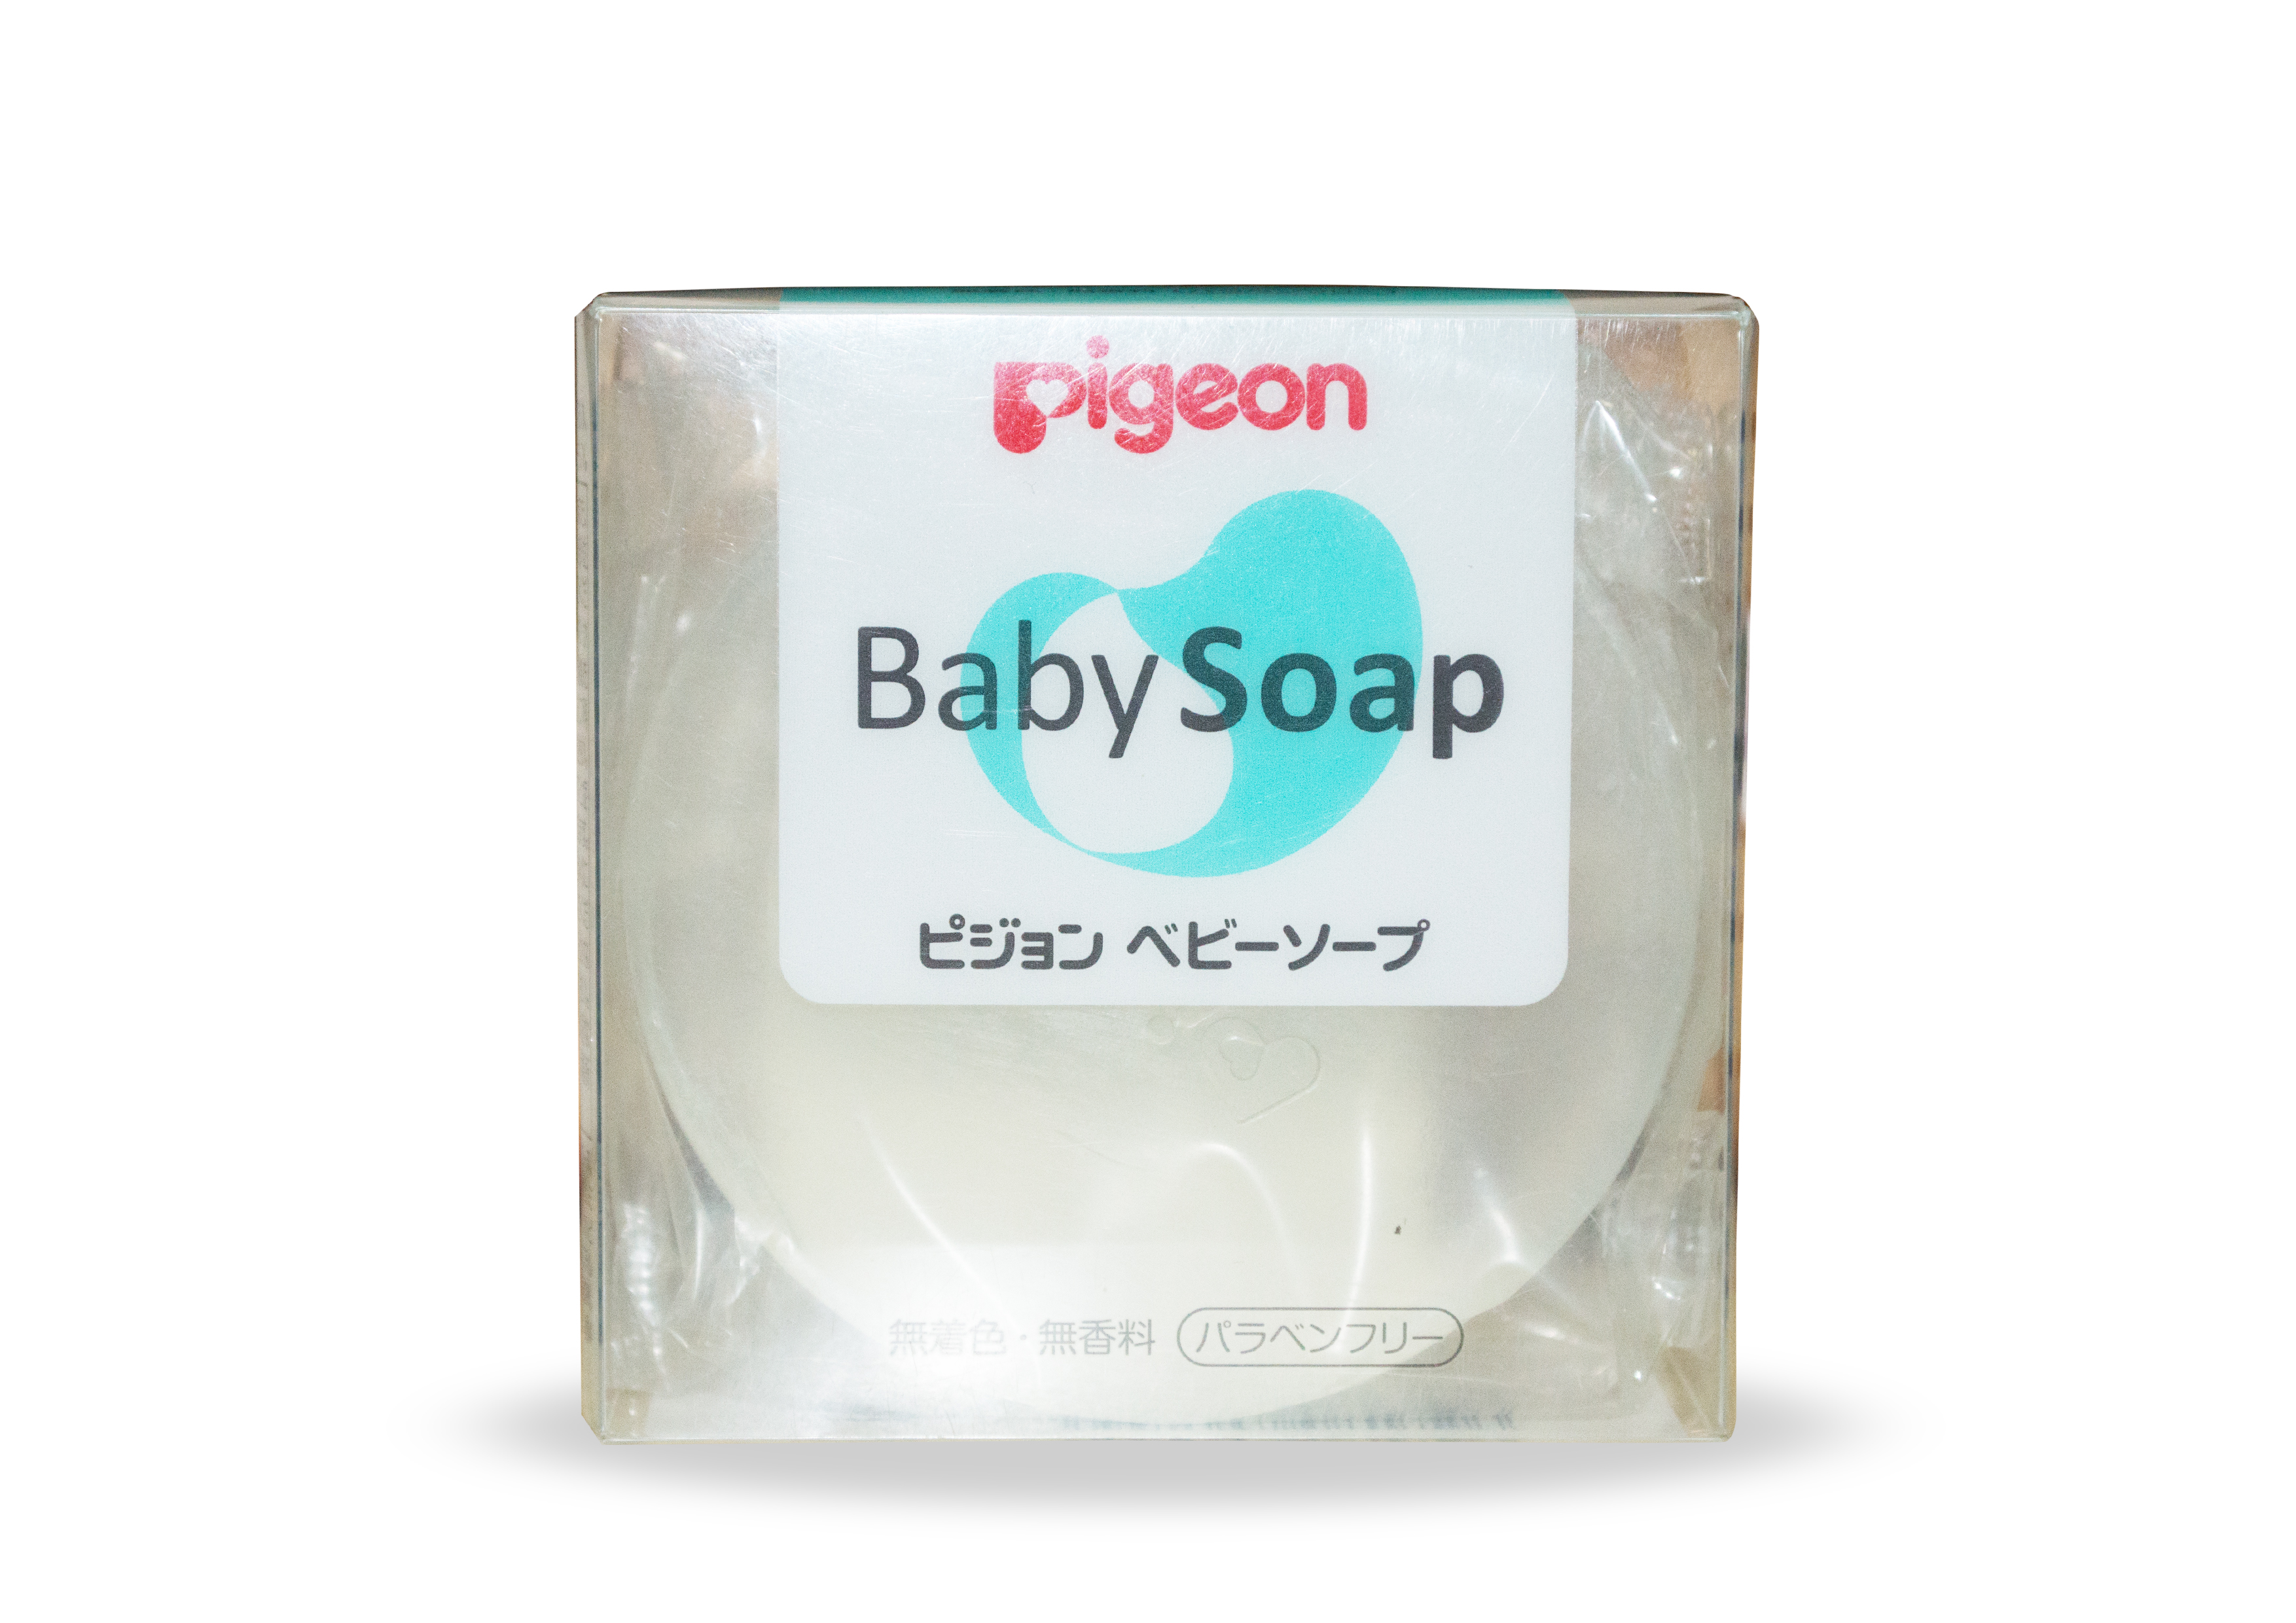 Pigeon transparent soap